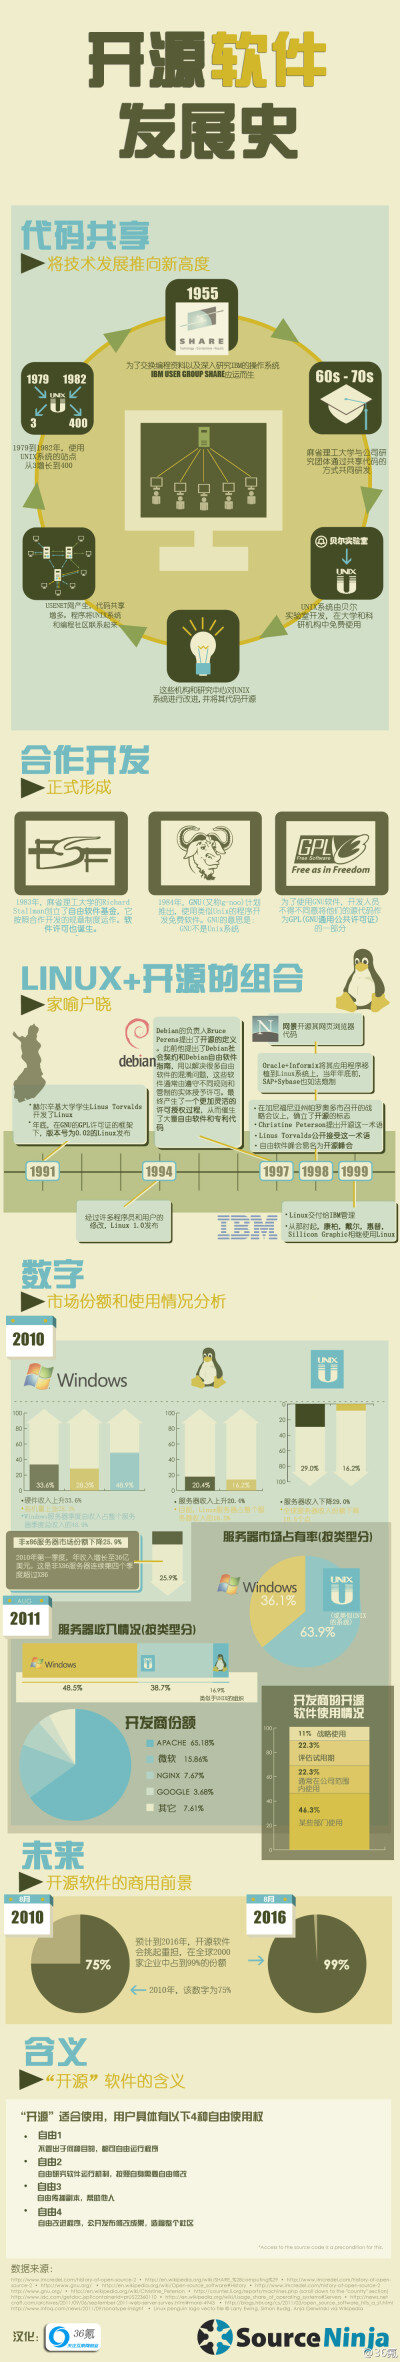 开源软件发展史【信息图】